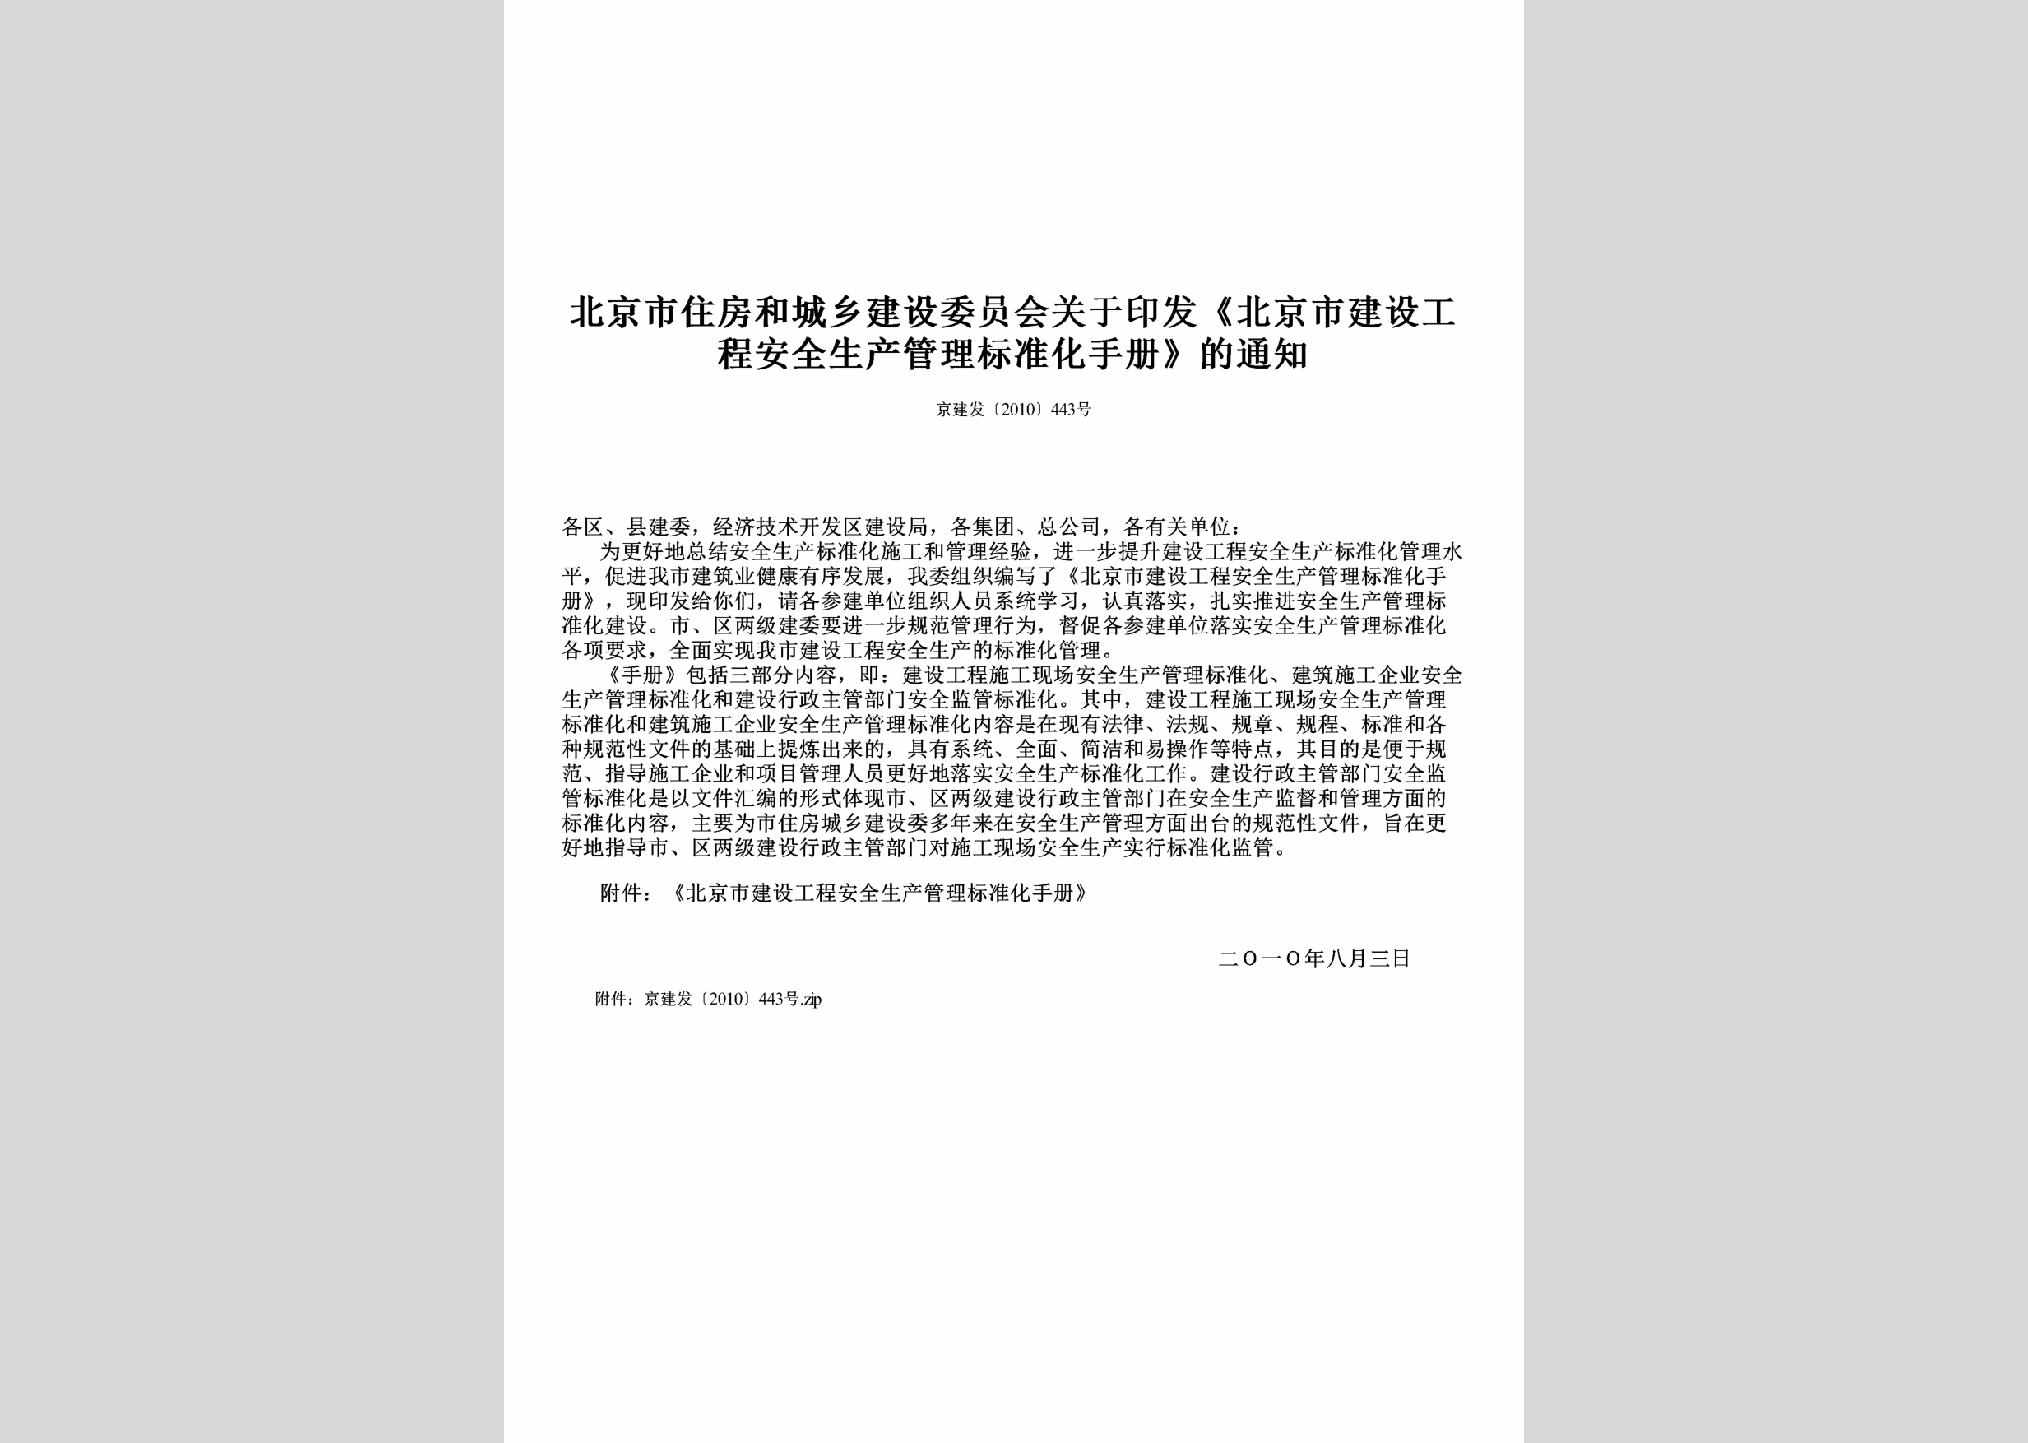 京建发[2010]443号：关于印发《北京市建设工程安全生产管理标准化手册》的通知